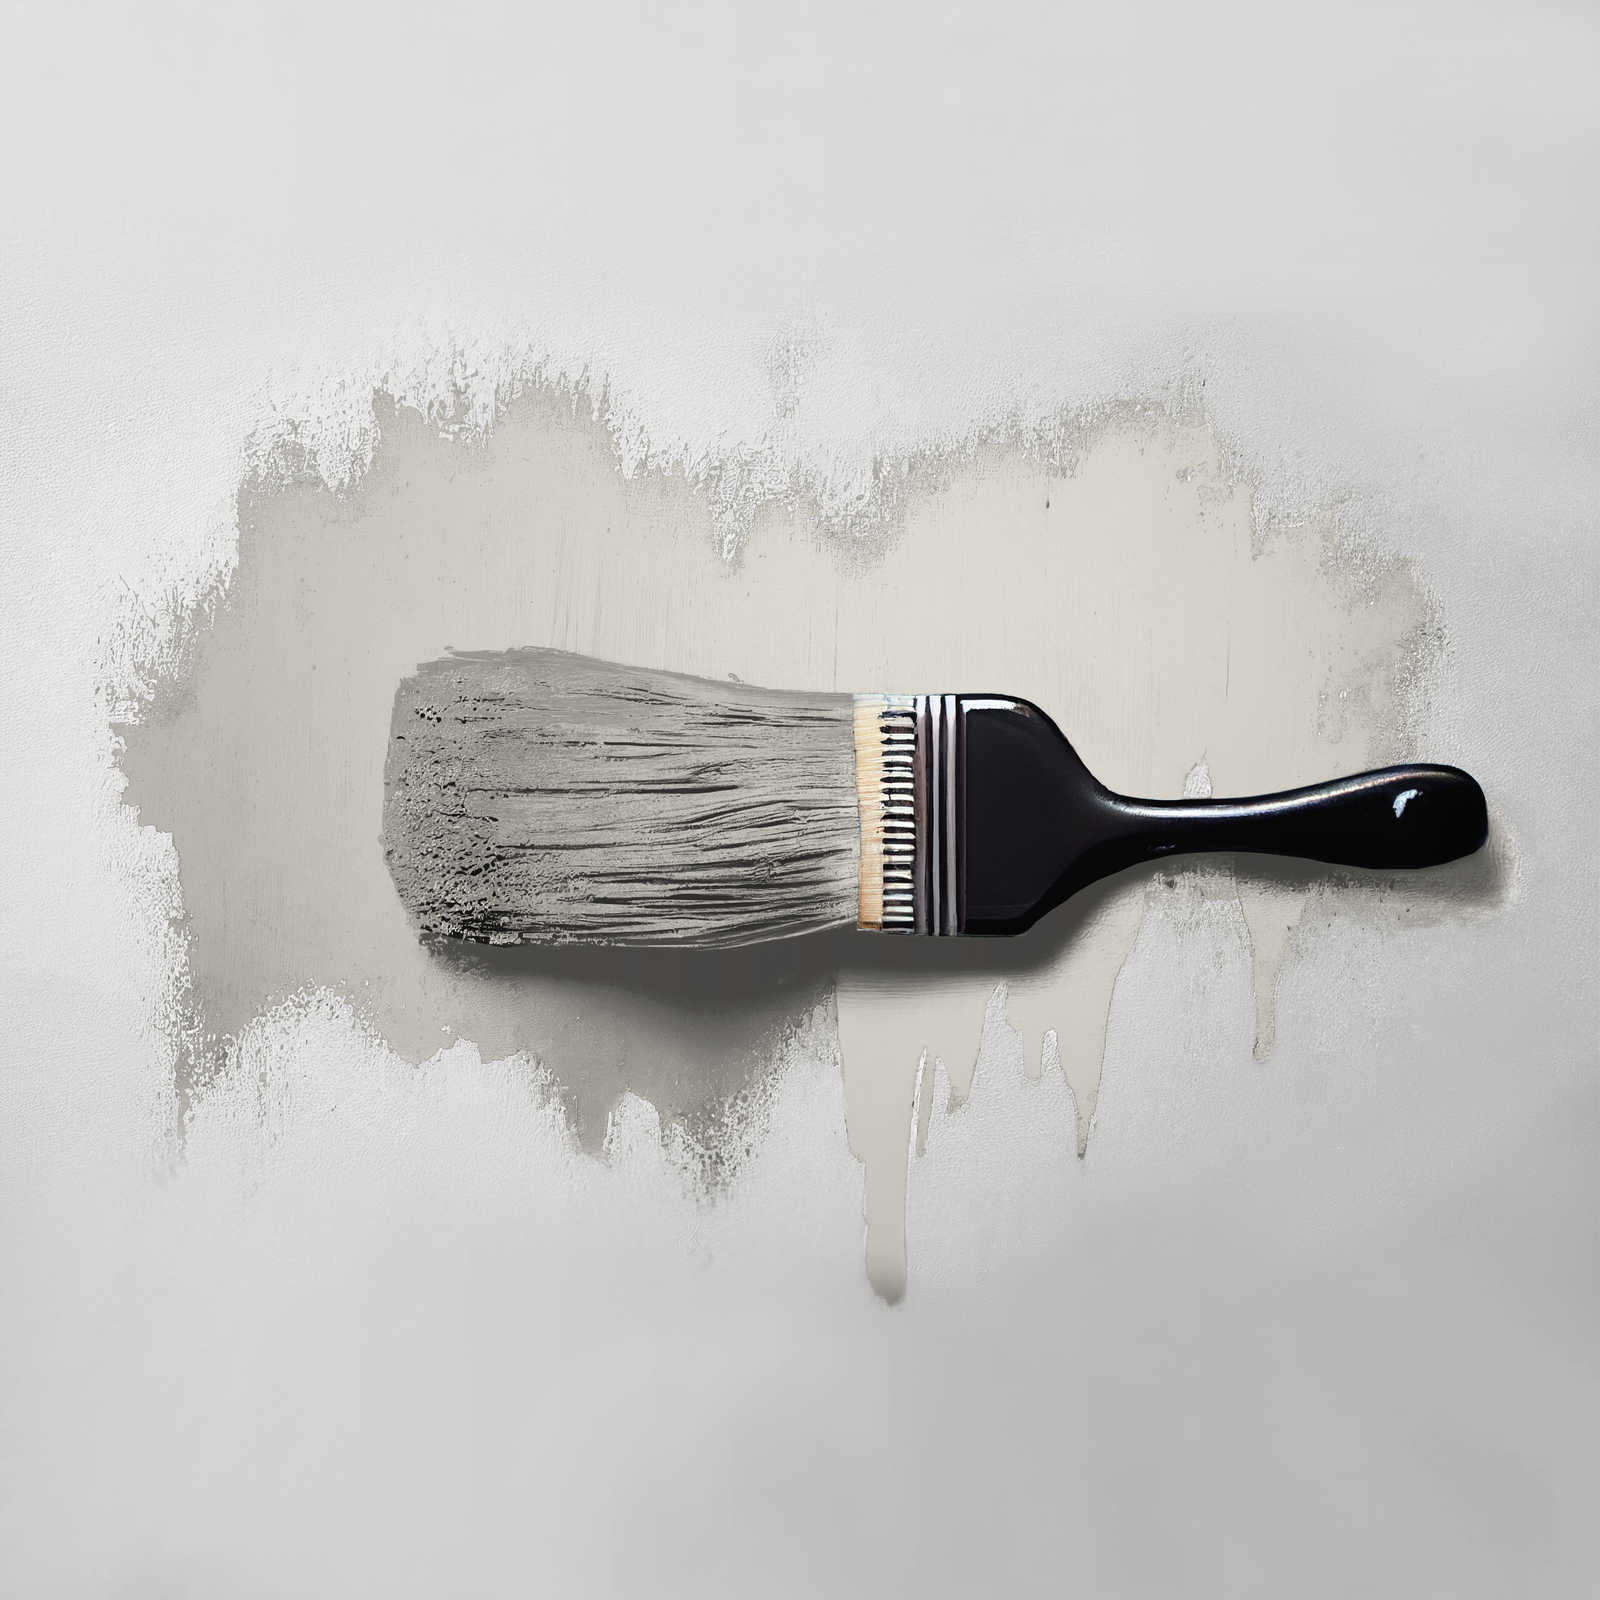             Pittura murale TCK1016 »Opened Oyster« in grigio morbido – 5,0 litri
        